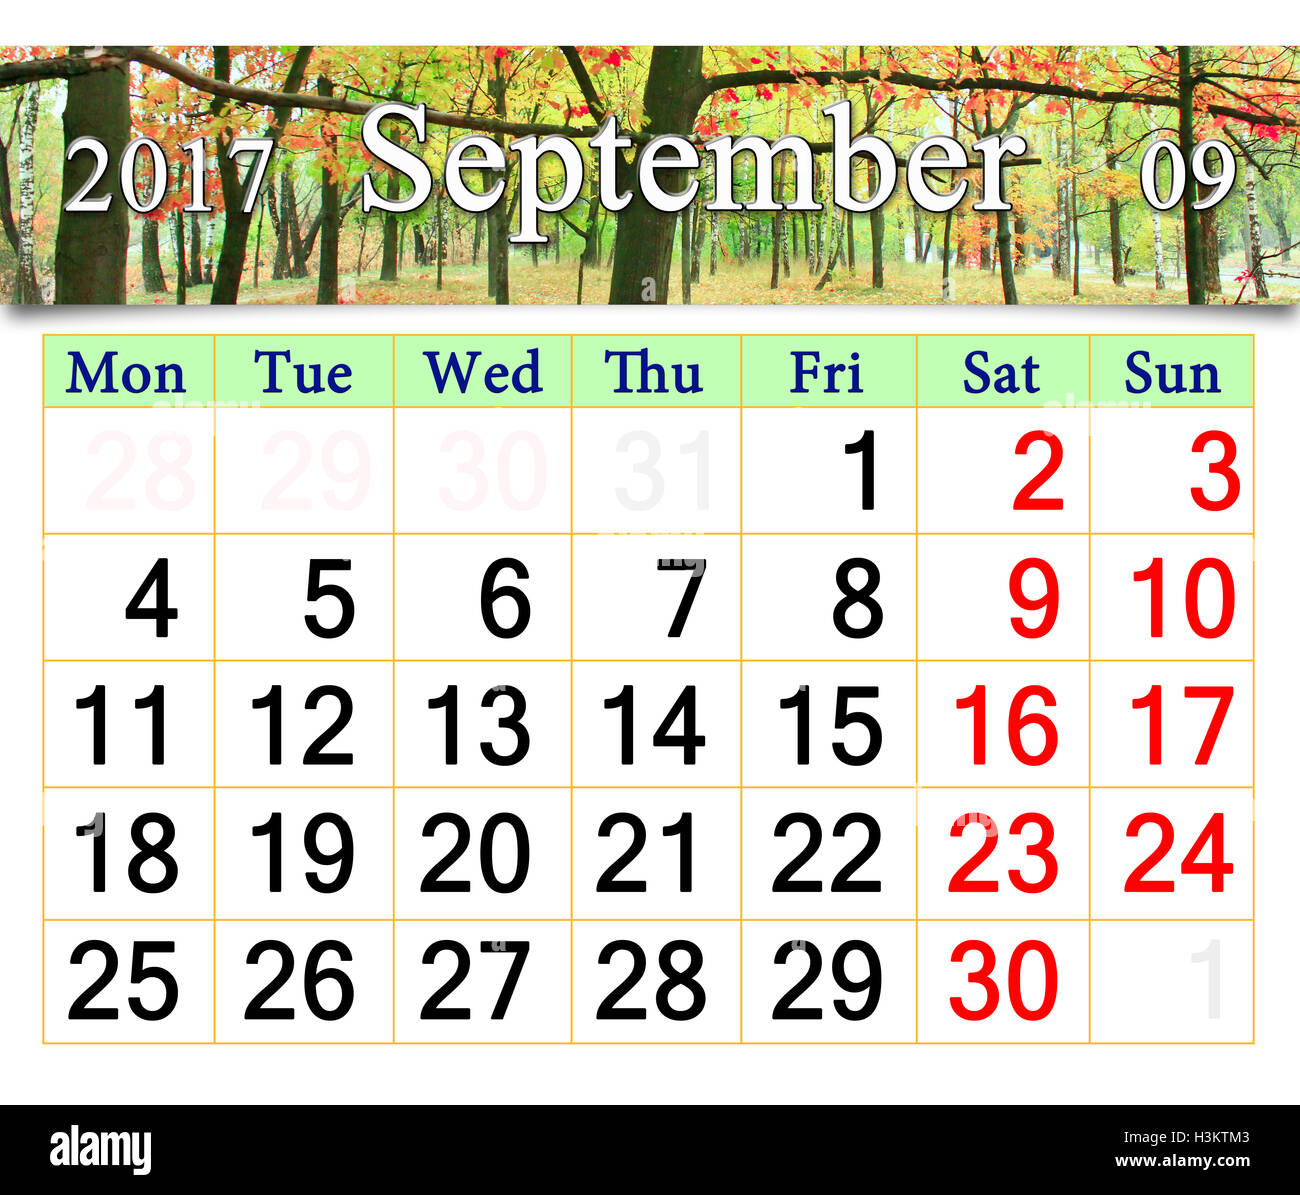 Septembre 2017 calendrier pour l'automne avec parc avec érables vert et jaune Banque D'Images